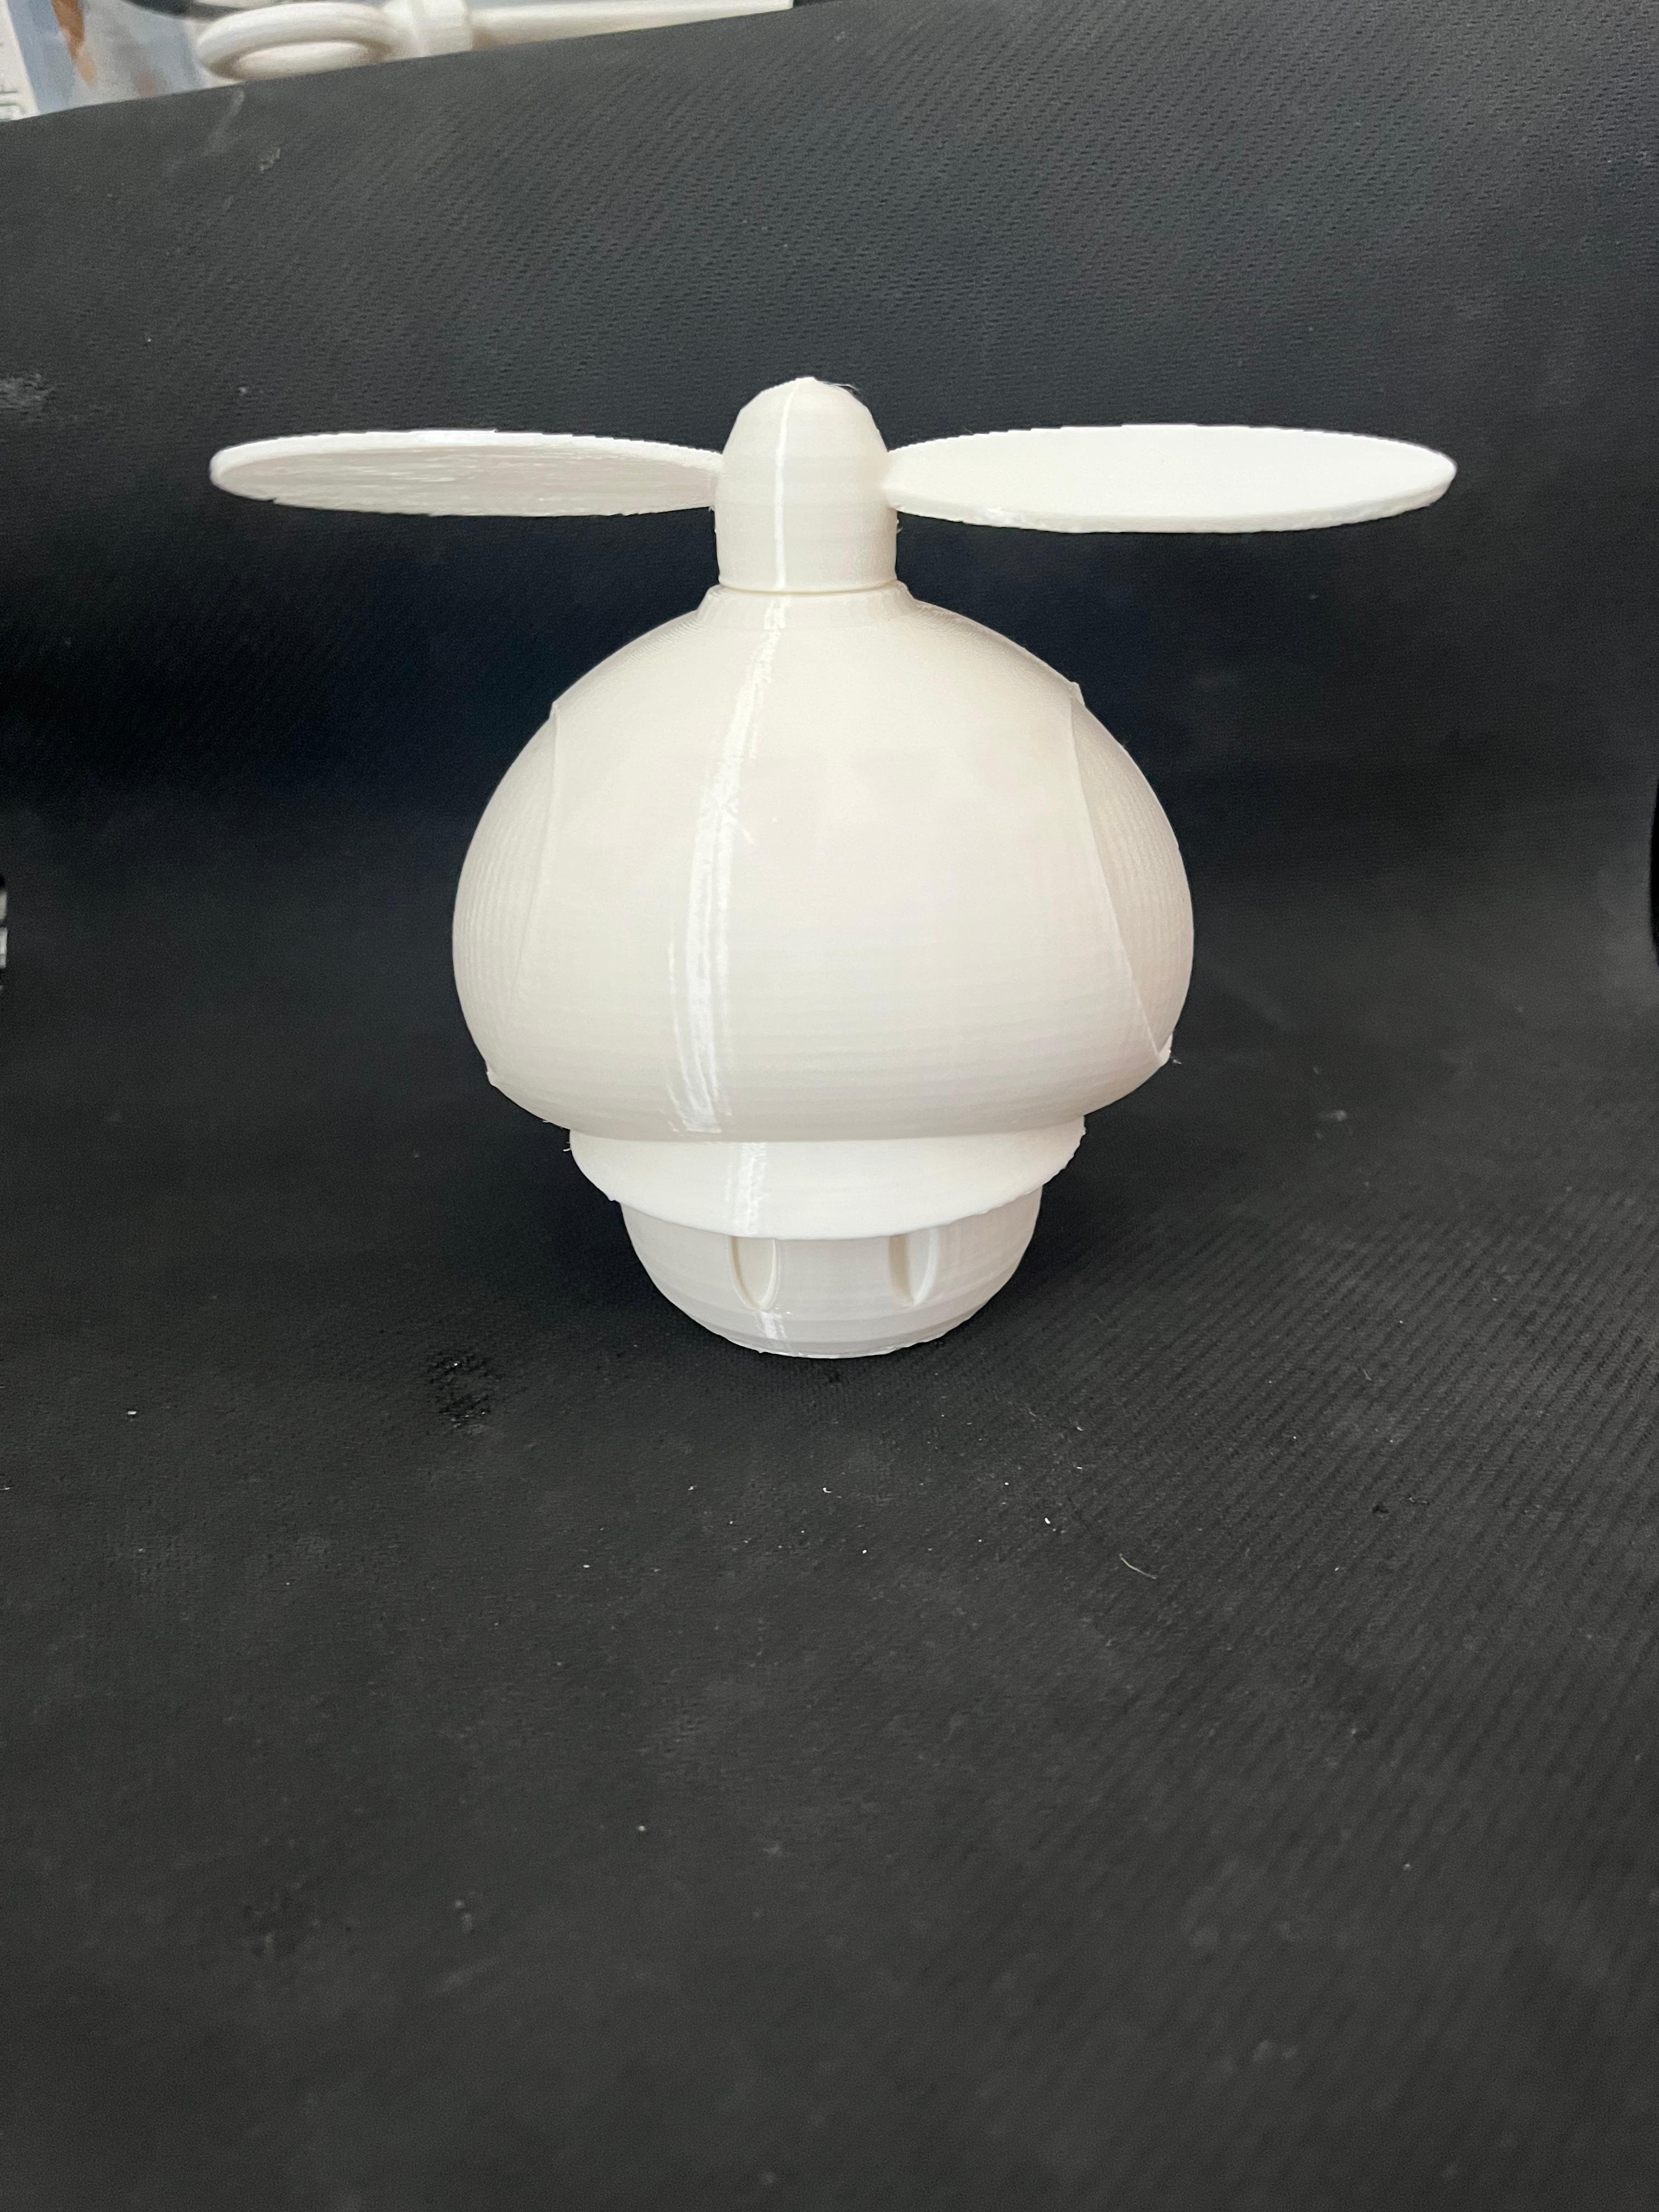 propeller mushroom.blend 3d model